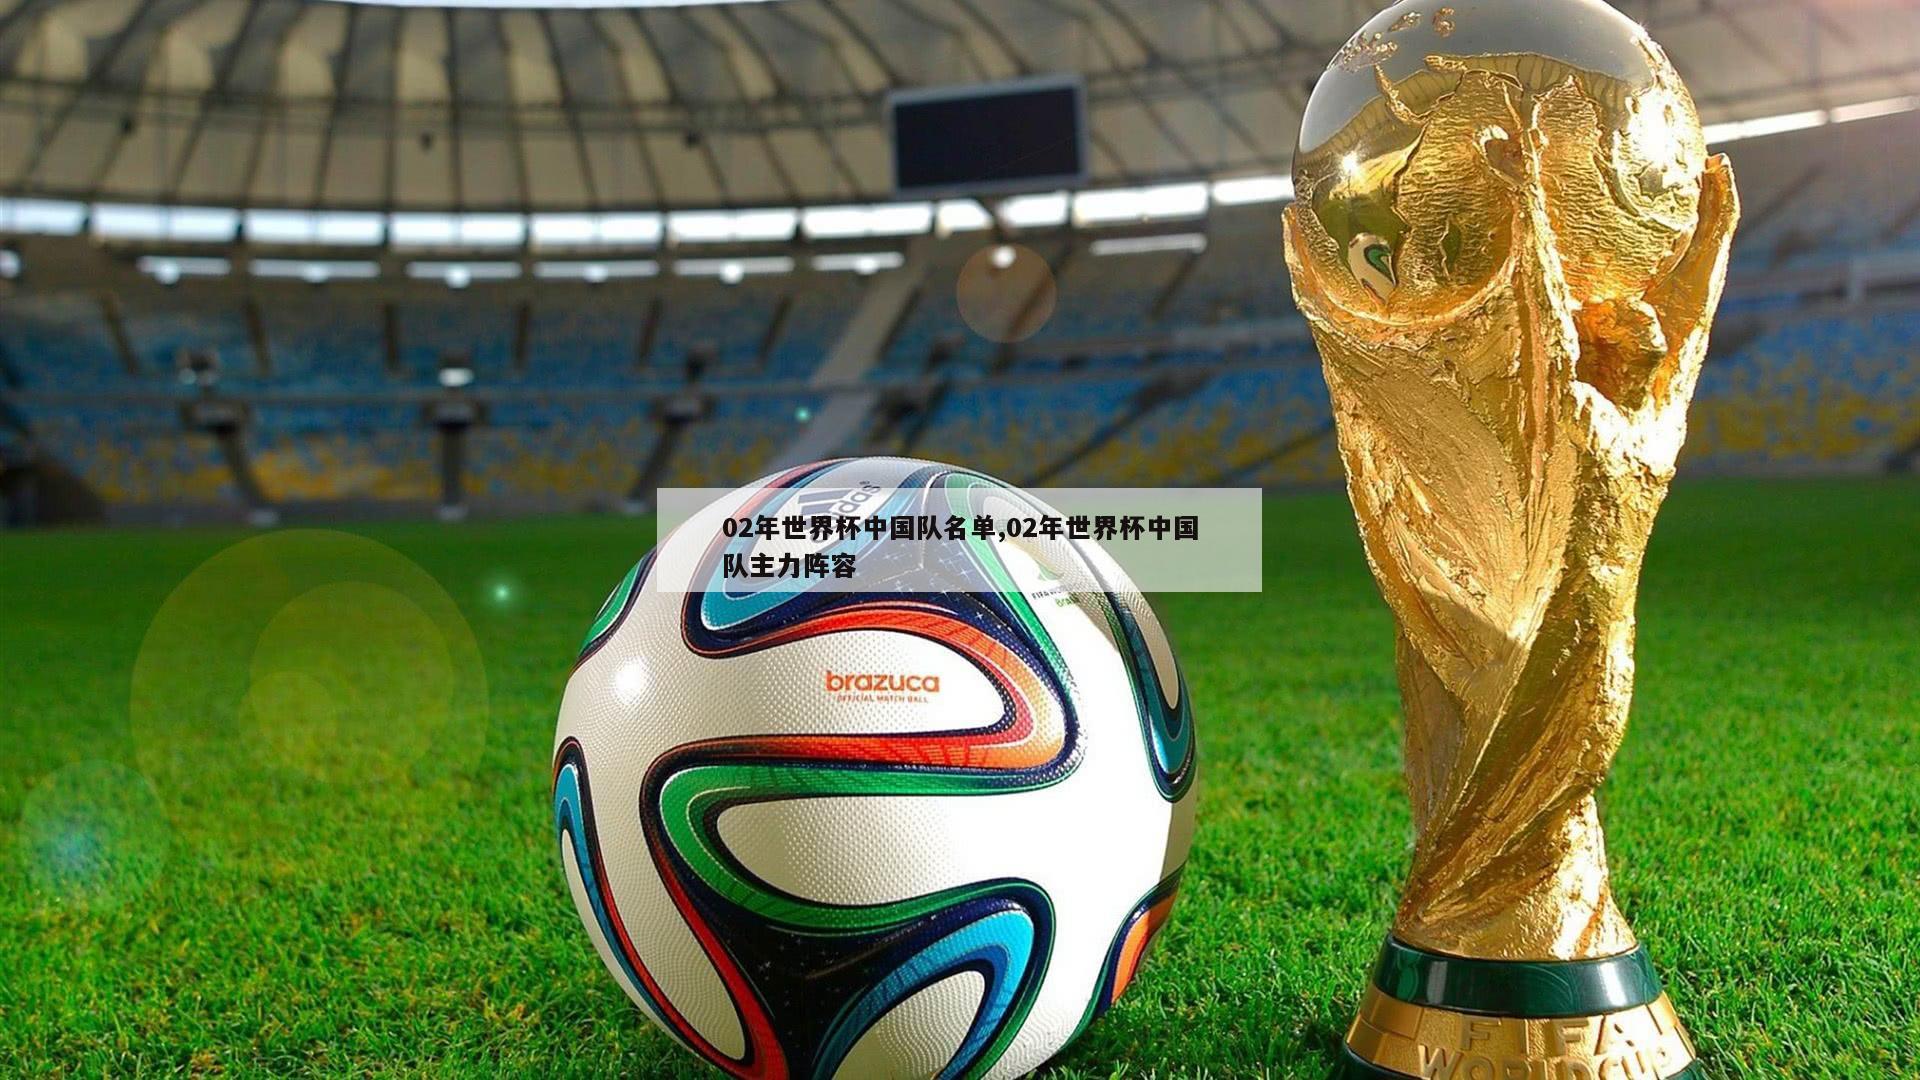 02年世界杯中国队名单,02年世界杯中国队主力阵容